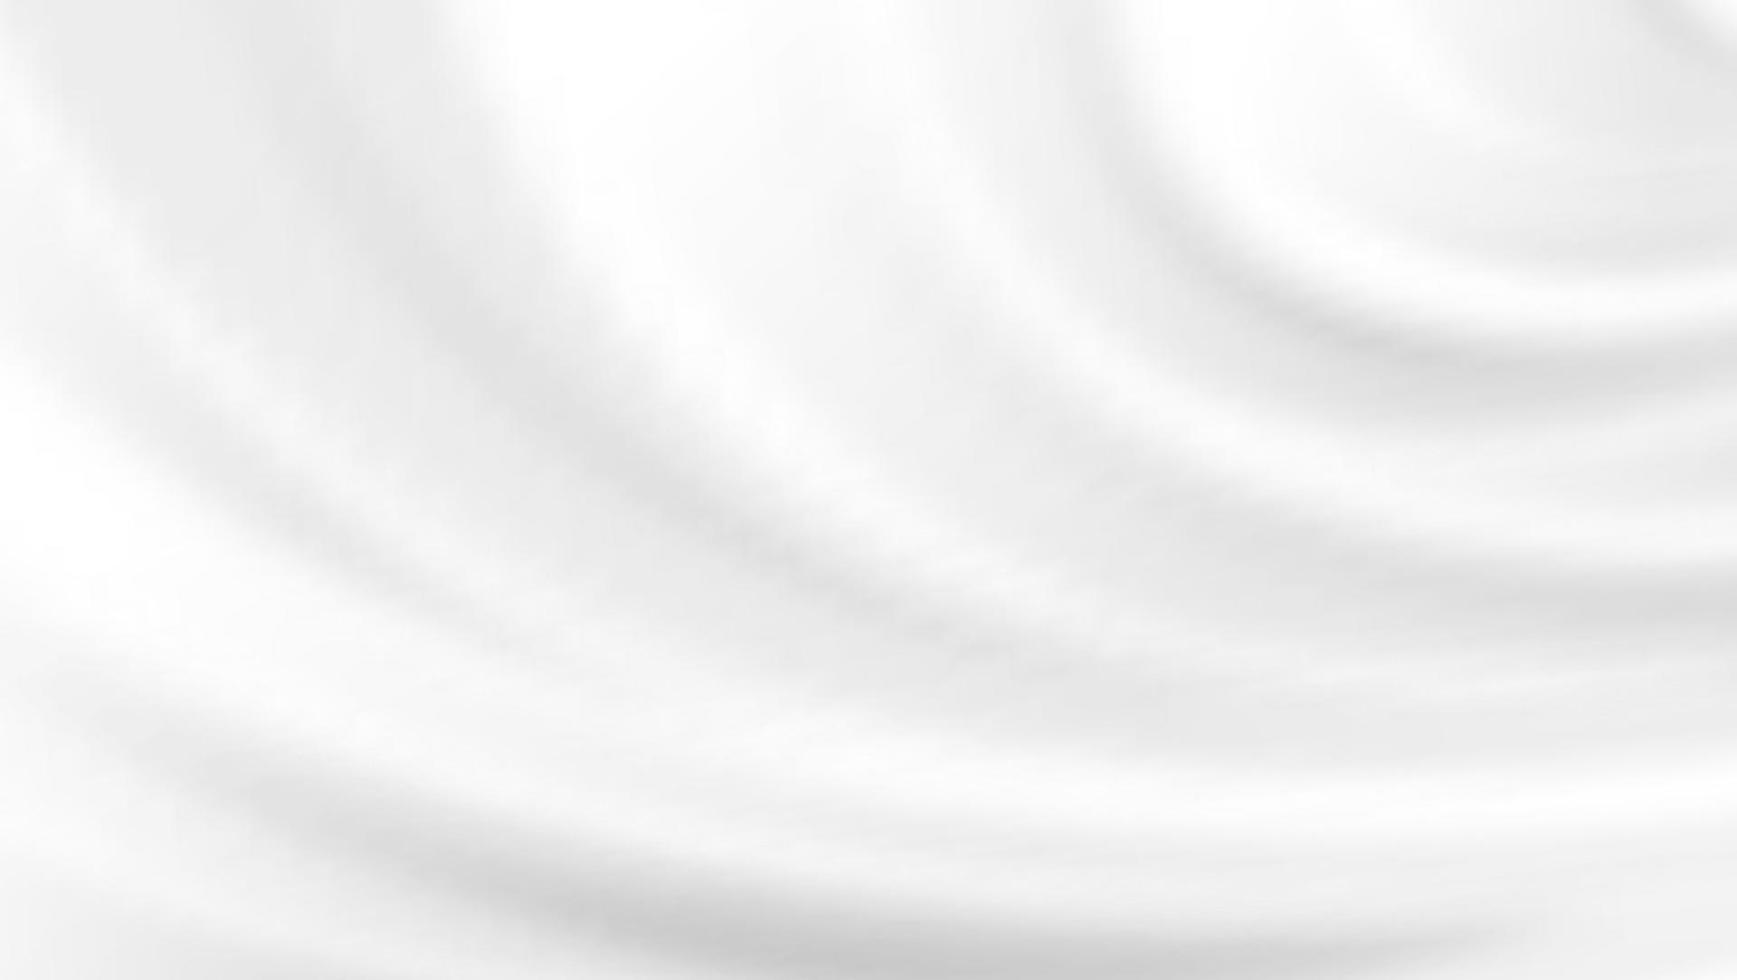 abstracte witte achtergrond luxe doek of vloeibare golf of golvende plooien van grunge zijde textuur satijn fluweel materiaal elegant behang ontwerp, achtergrond. vector illustratie